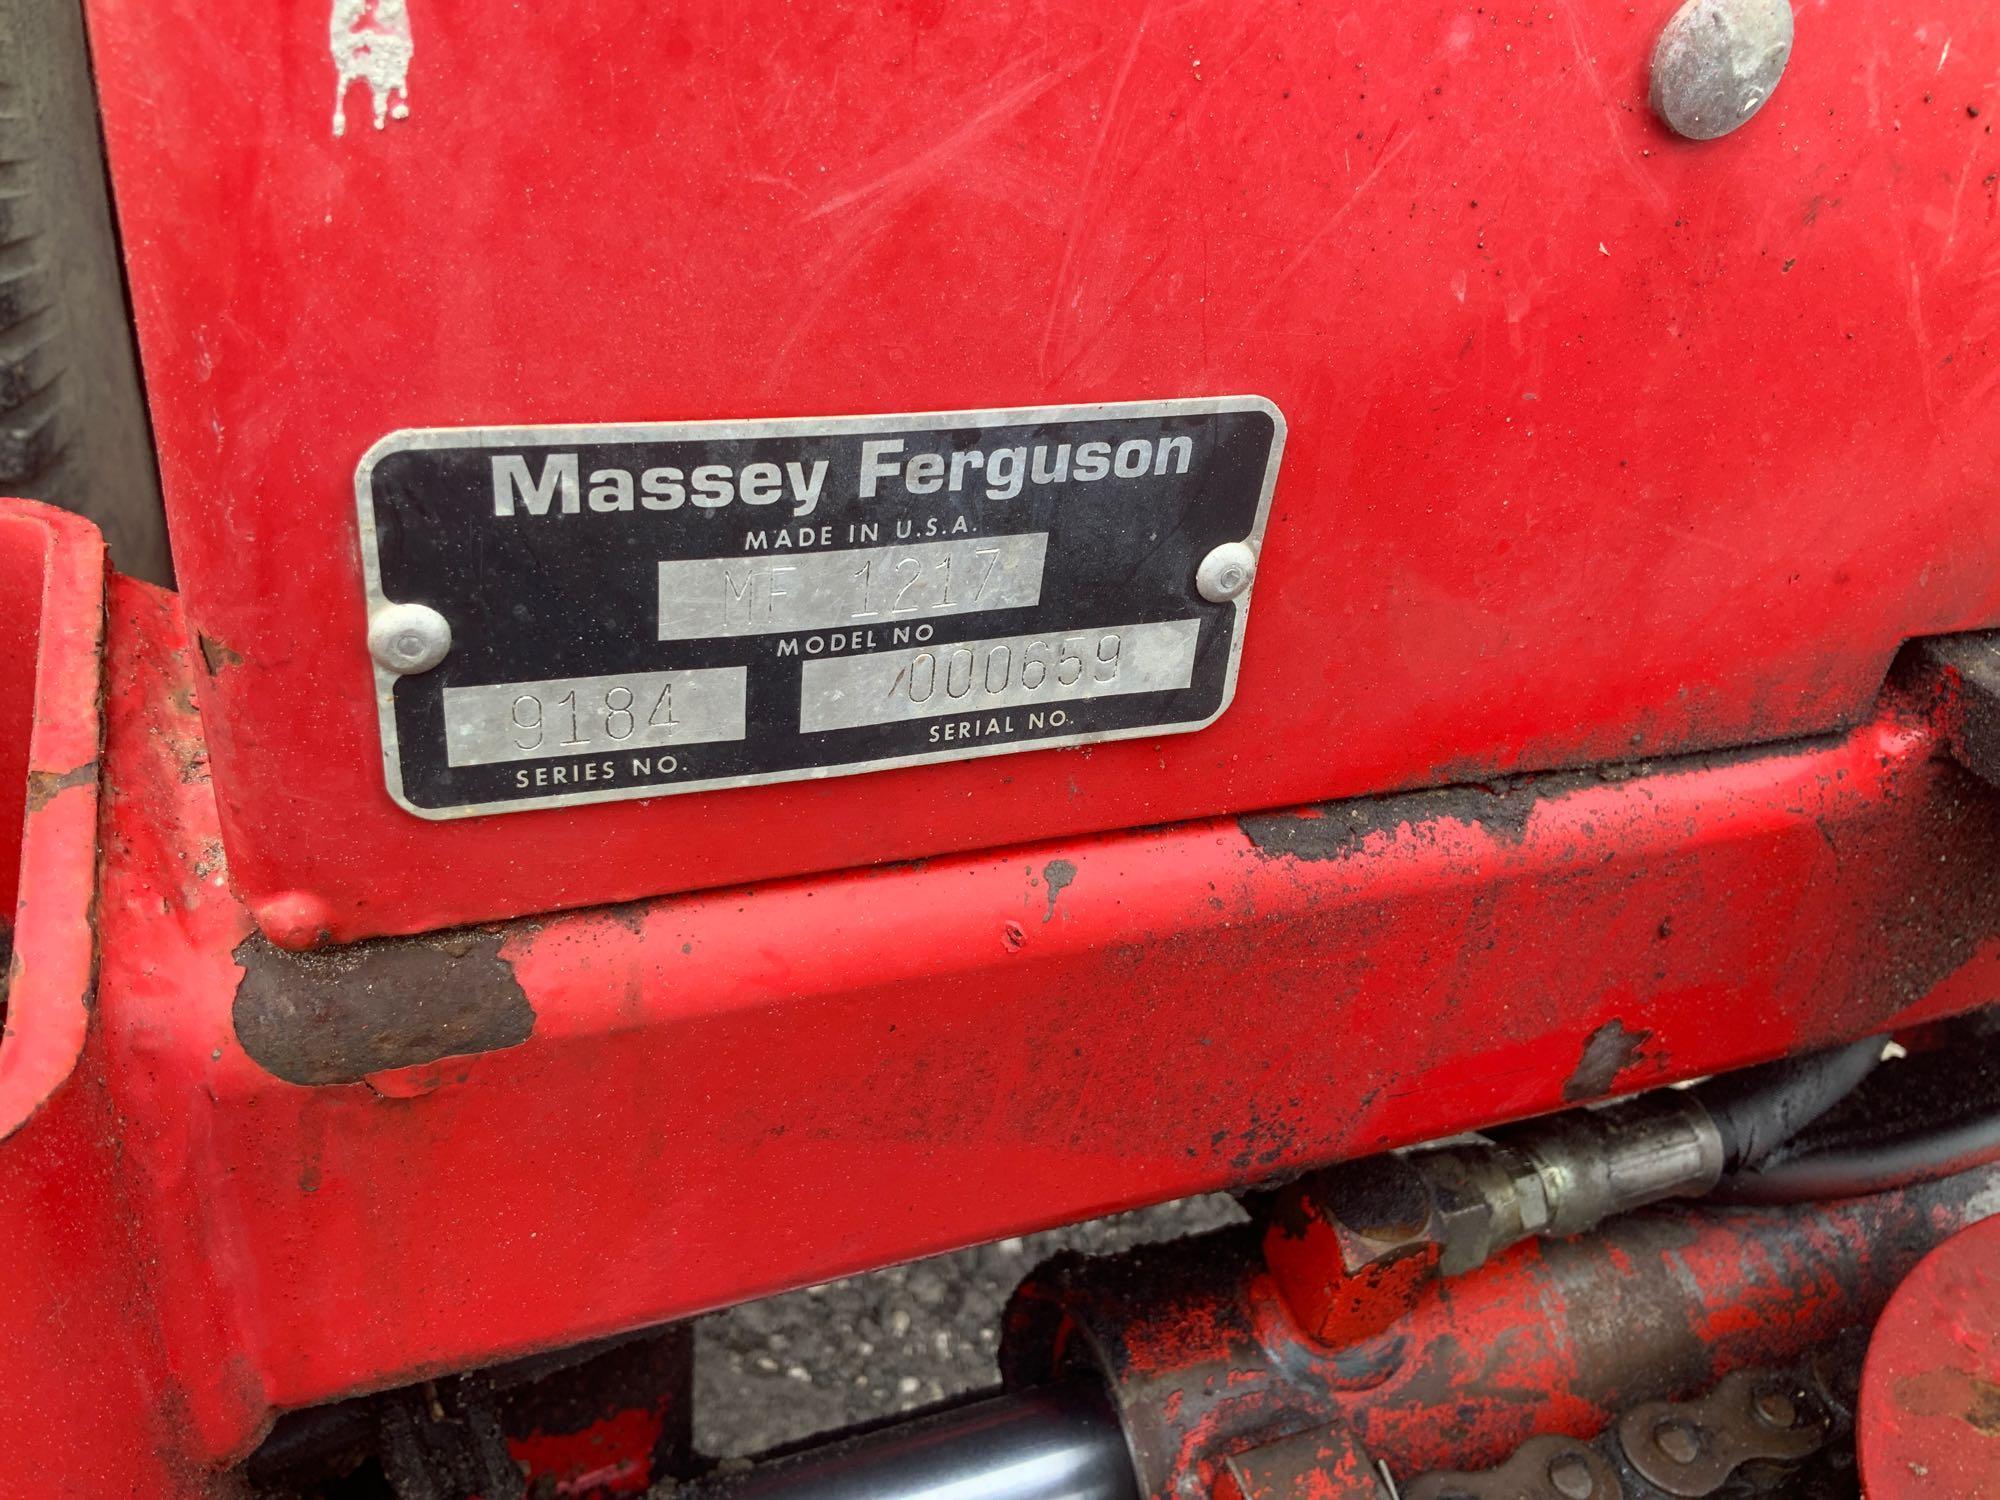 Massey Ferguson MF1250 4WD Loader Backhoe Tractor